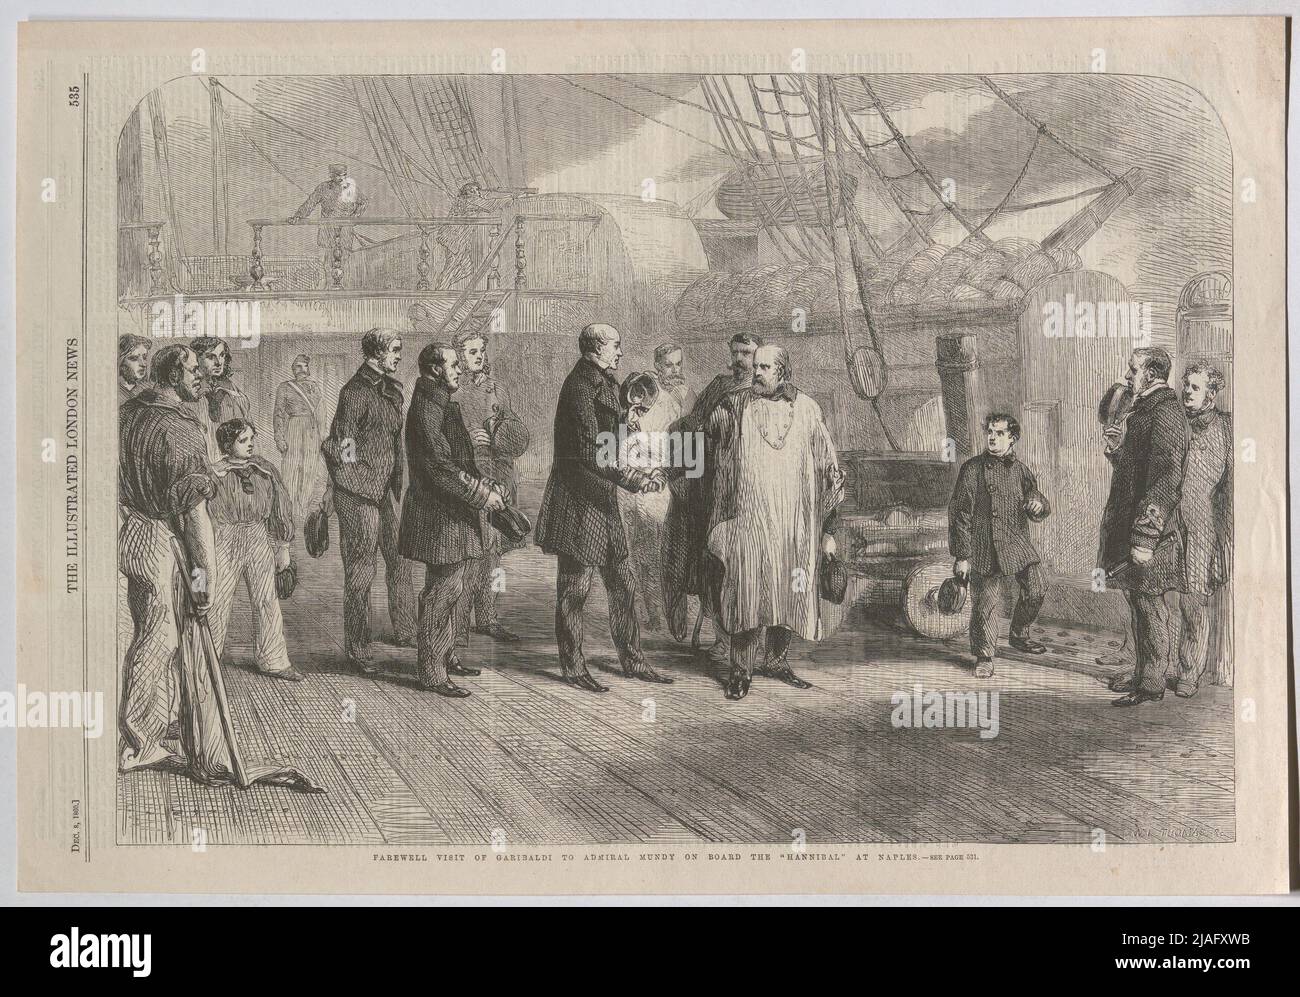 Addio visita di Garibaldi all'ammiraglio Mundy a bordo dell'Annibale di  Napoli. Visita di addio di Giuseppe Garibaldi all'Ammiraglio Mundy a bordo  dell'Annibale di Napoli (dalla 'Illustrated London News'). William Luson  Thomas (1830-1900) ,